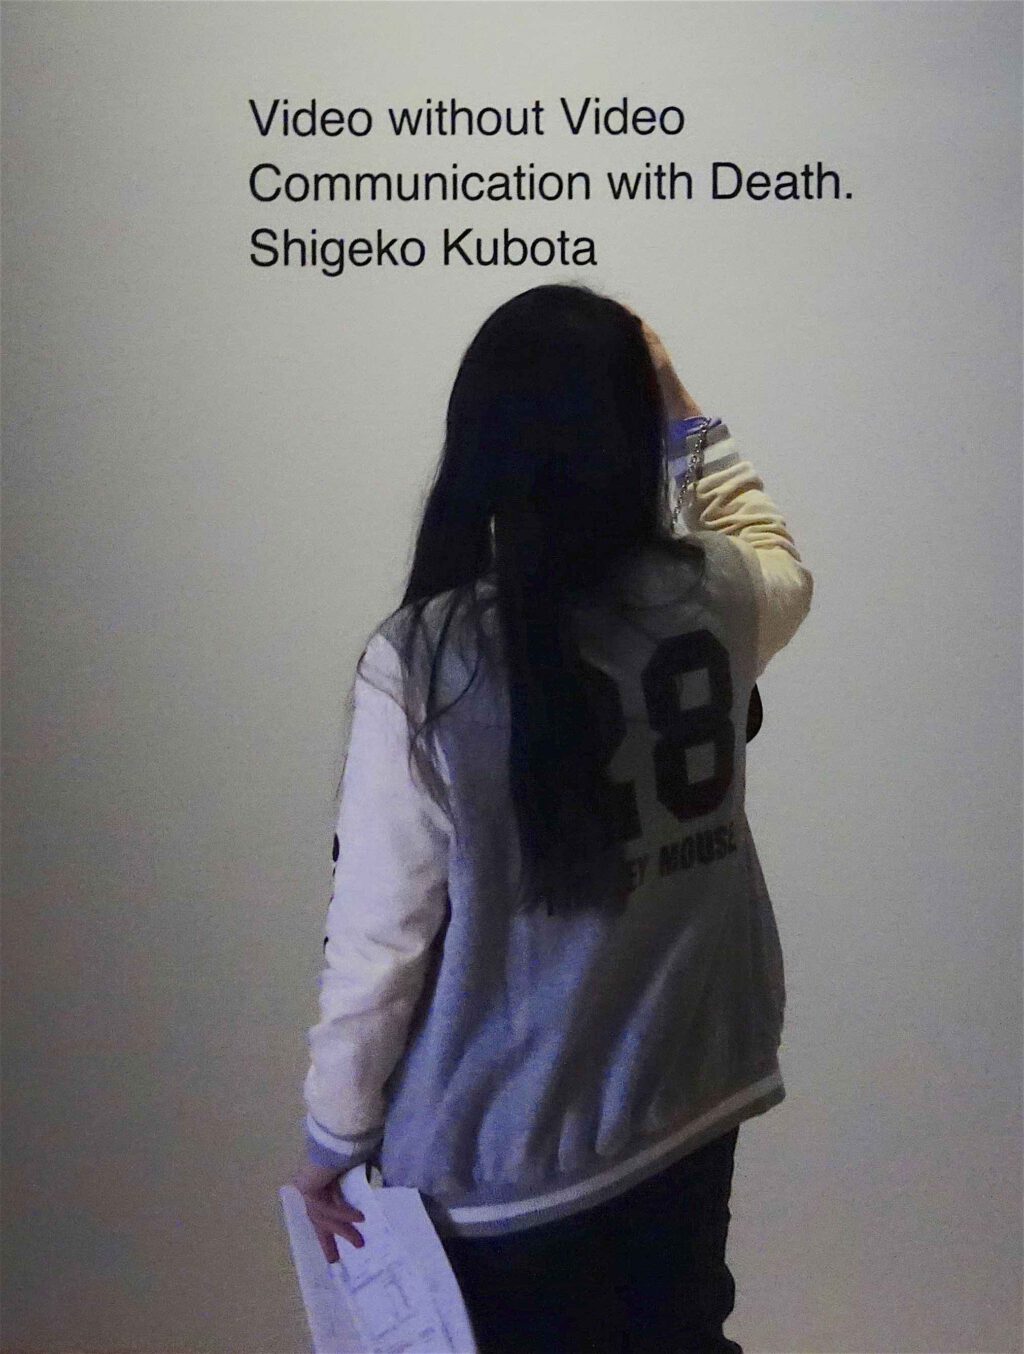 久保田成子 KUBOTA Shigeko「デュシャンピアナ：デュシャンの墓」”Duchamp’s grave” 1972:75:2019, part of the installation